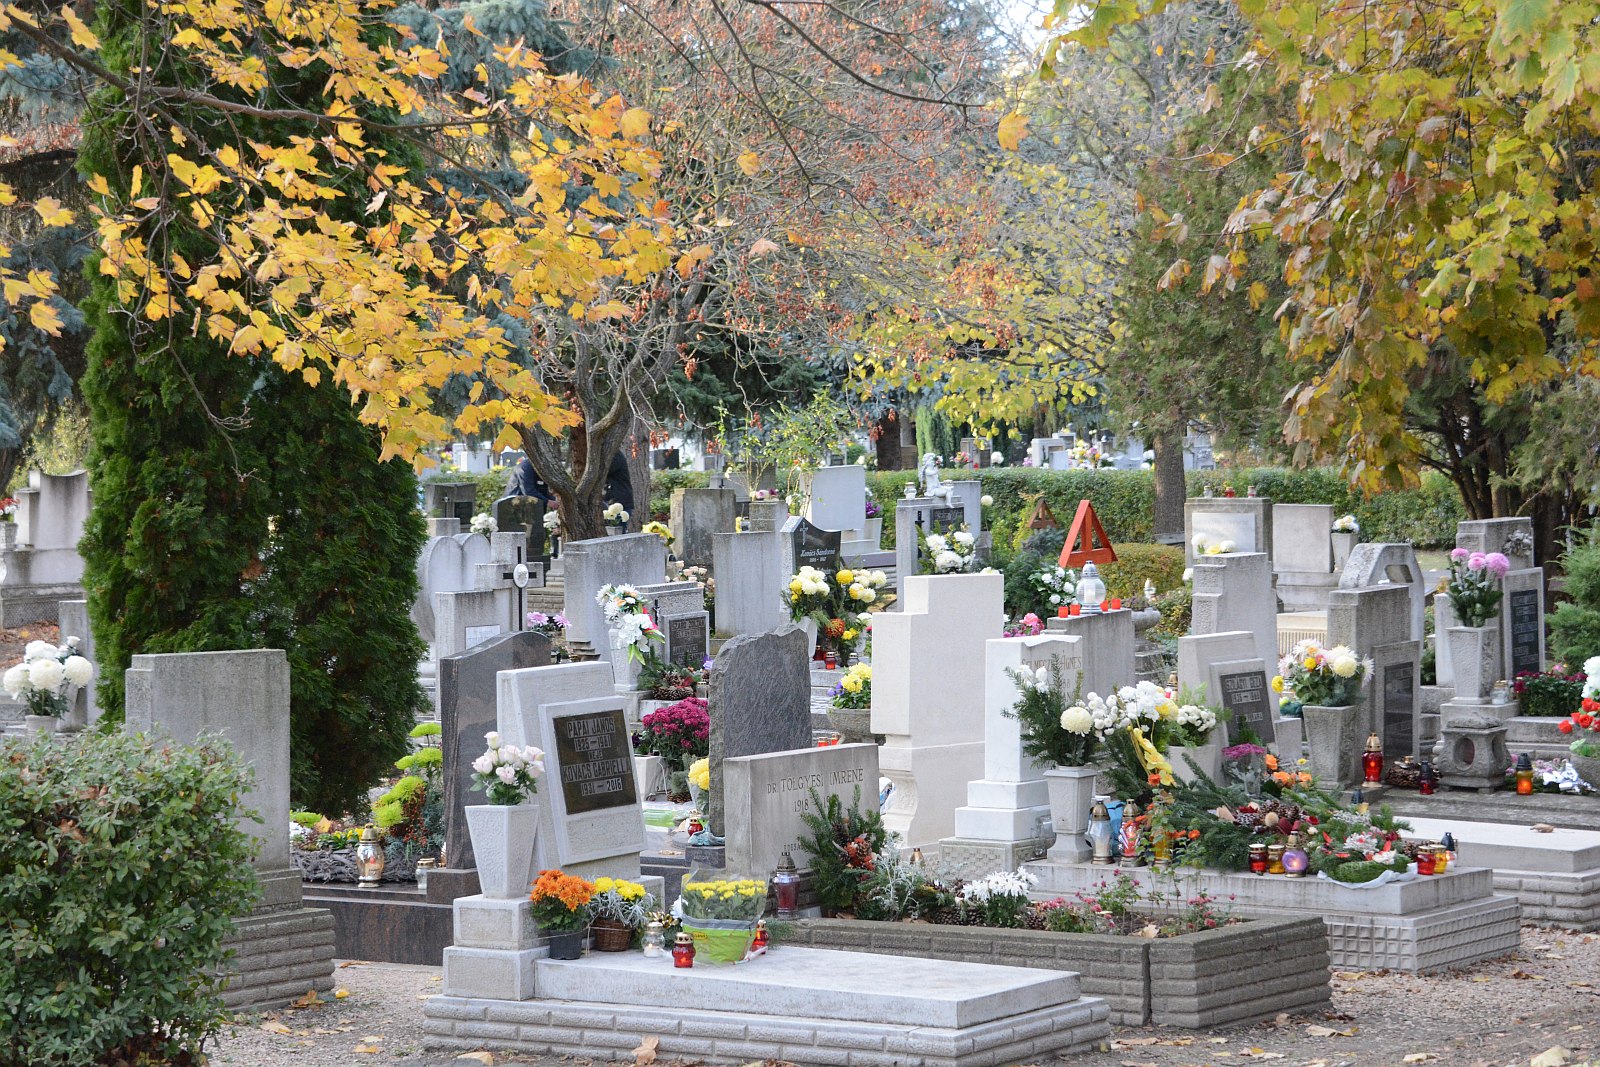 Kegyeleti napok - fokozottan figyelnek a temetők körüli biztonságra is